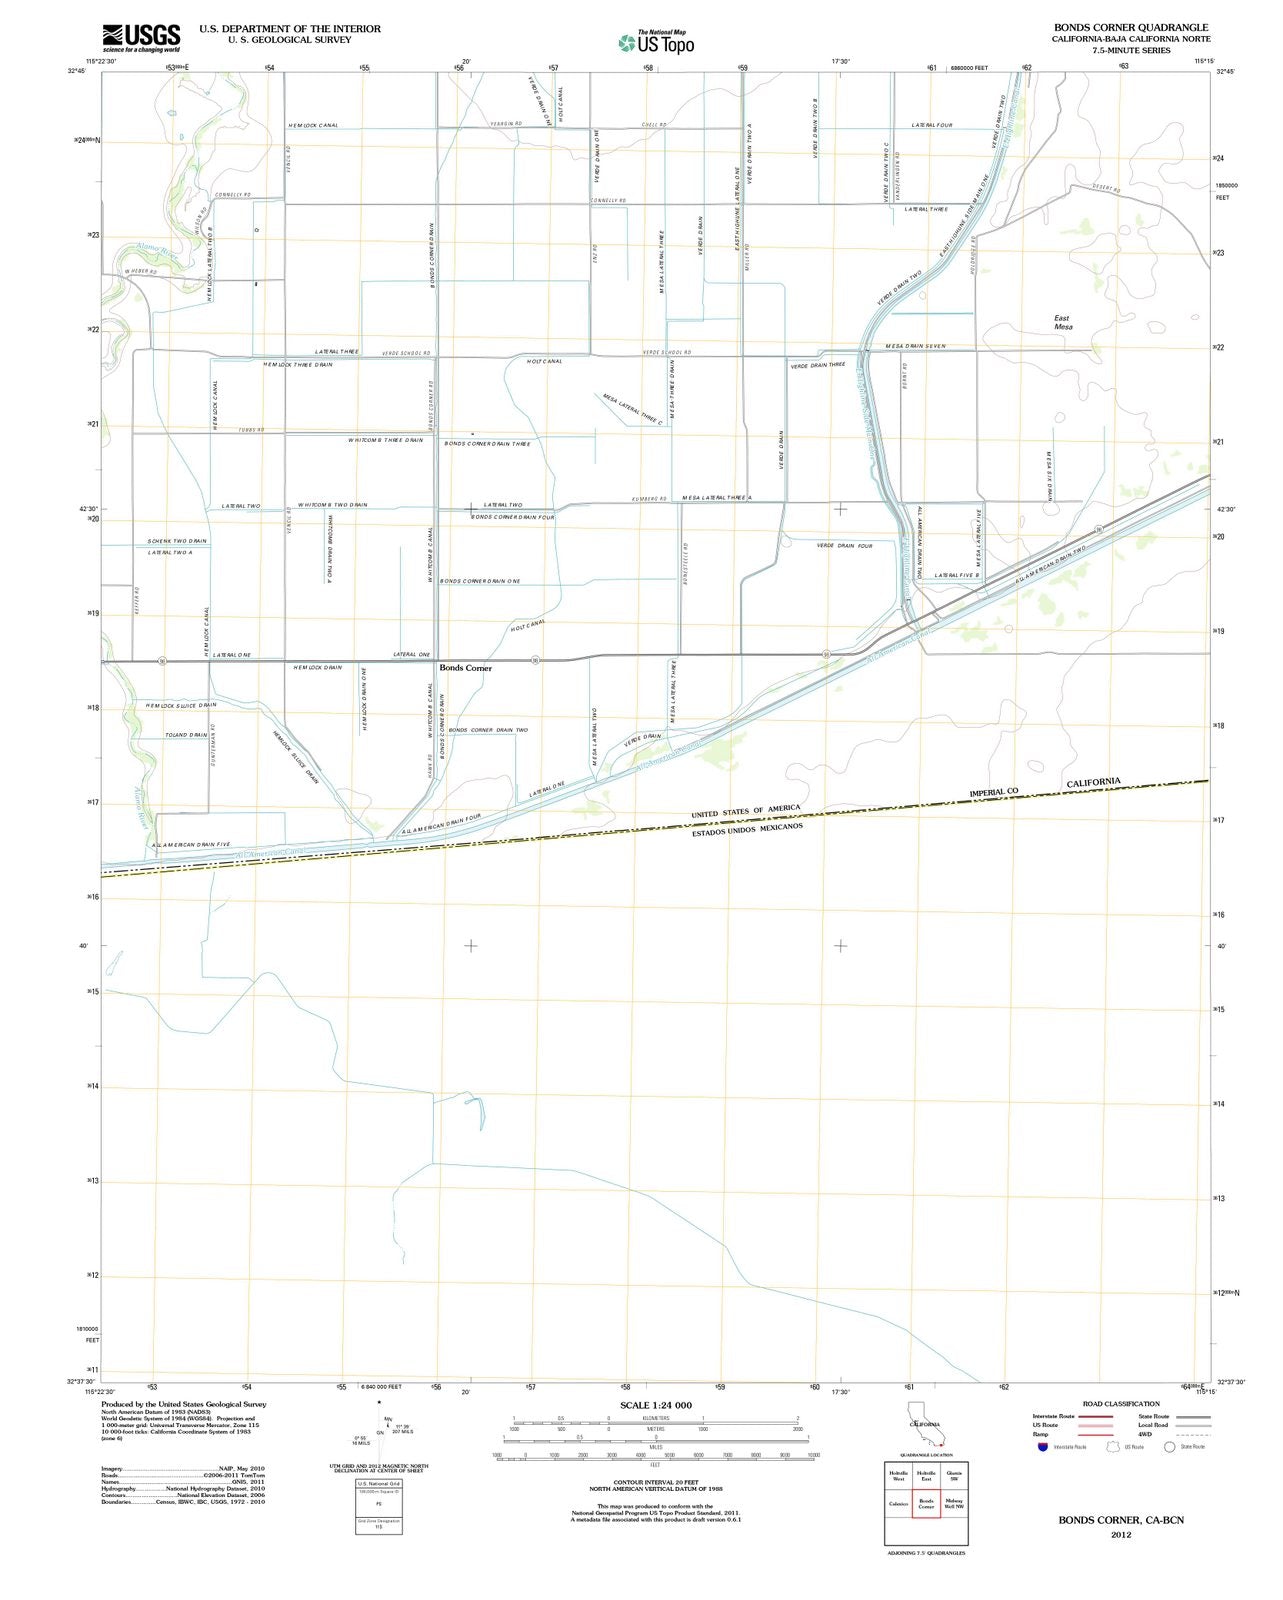 2012 Bonds Corner, CA - California - USGS Topographic Map